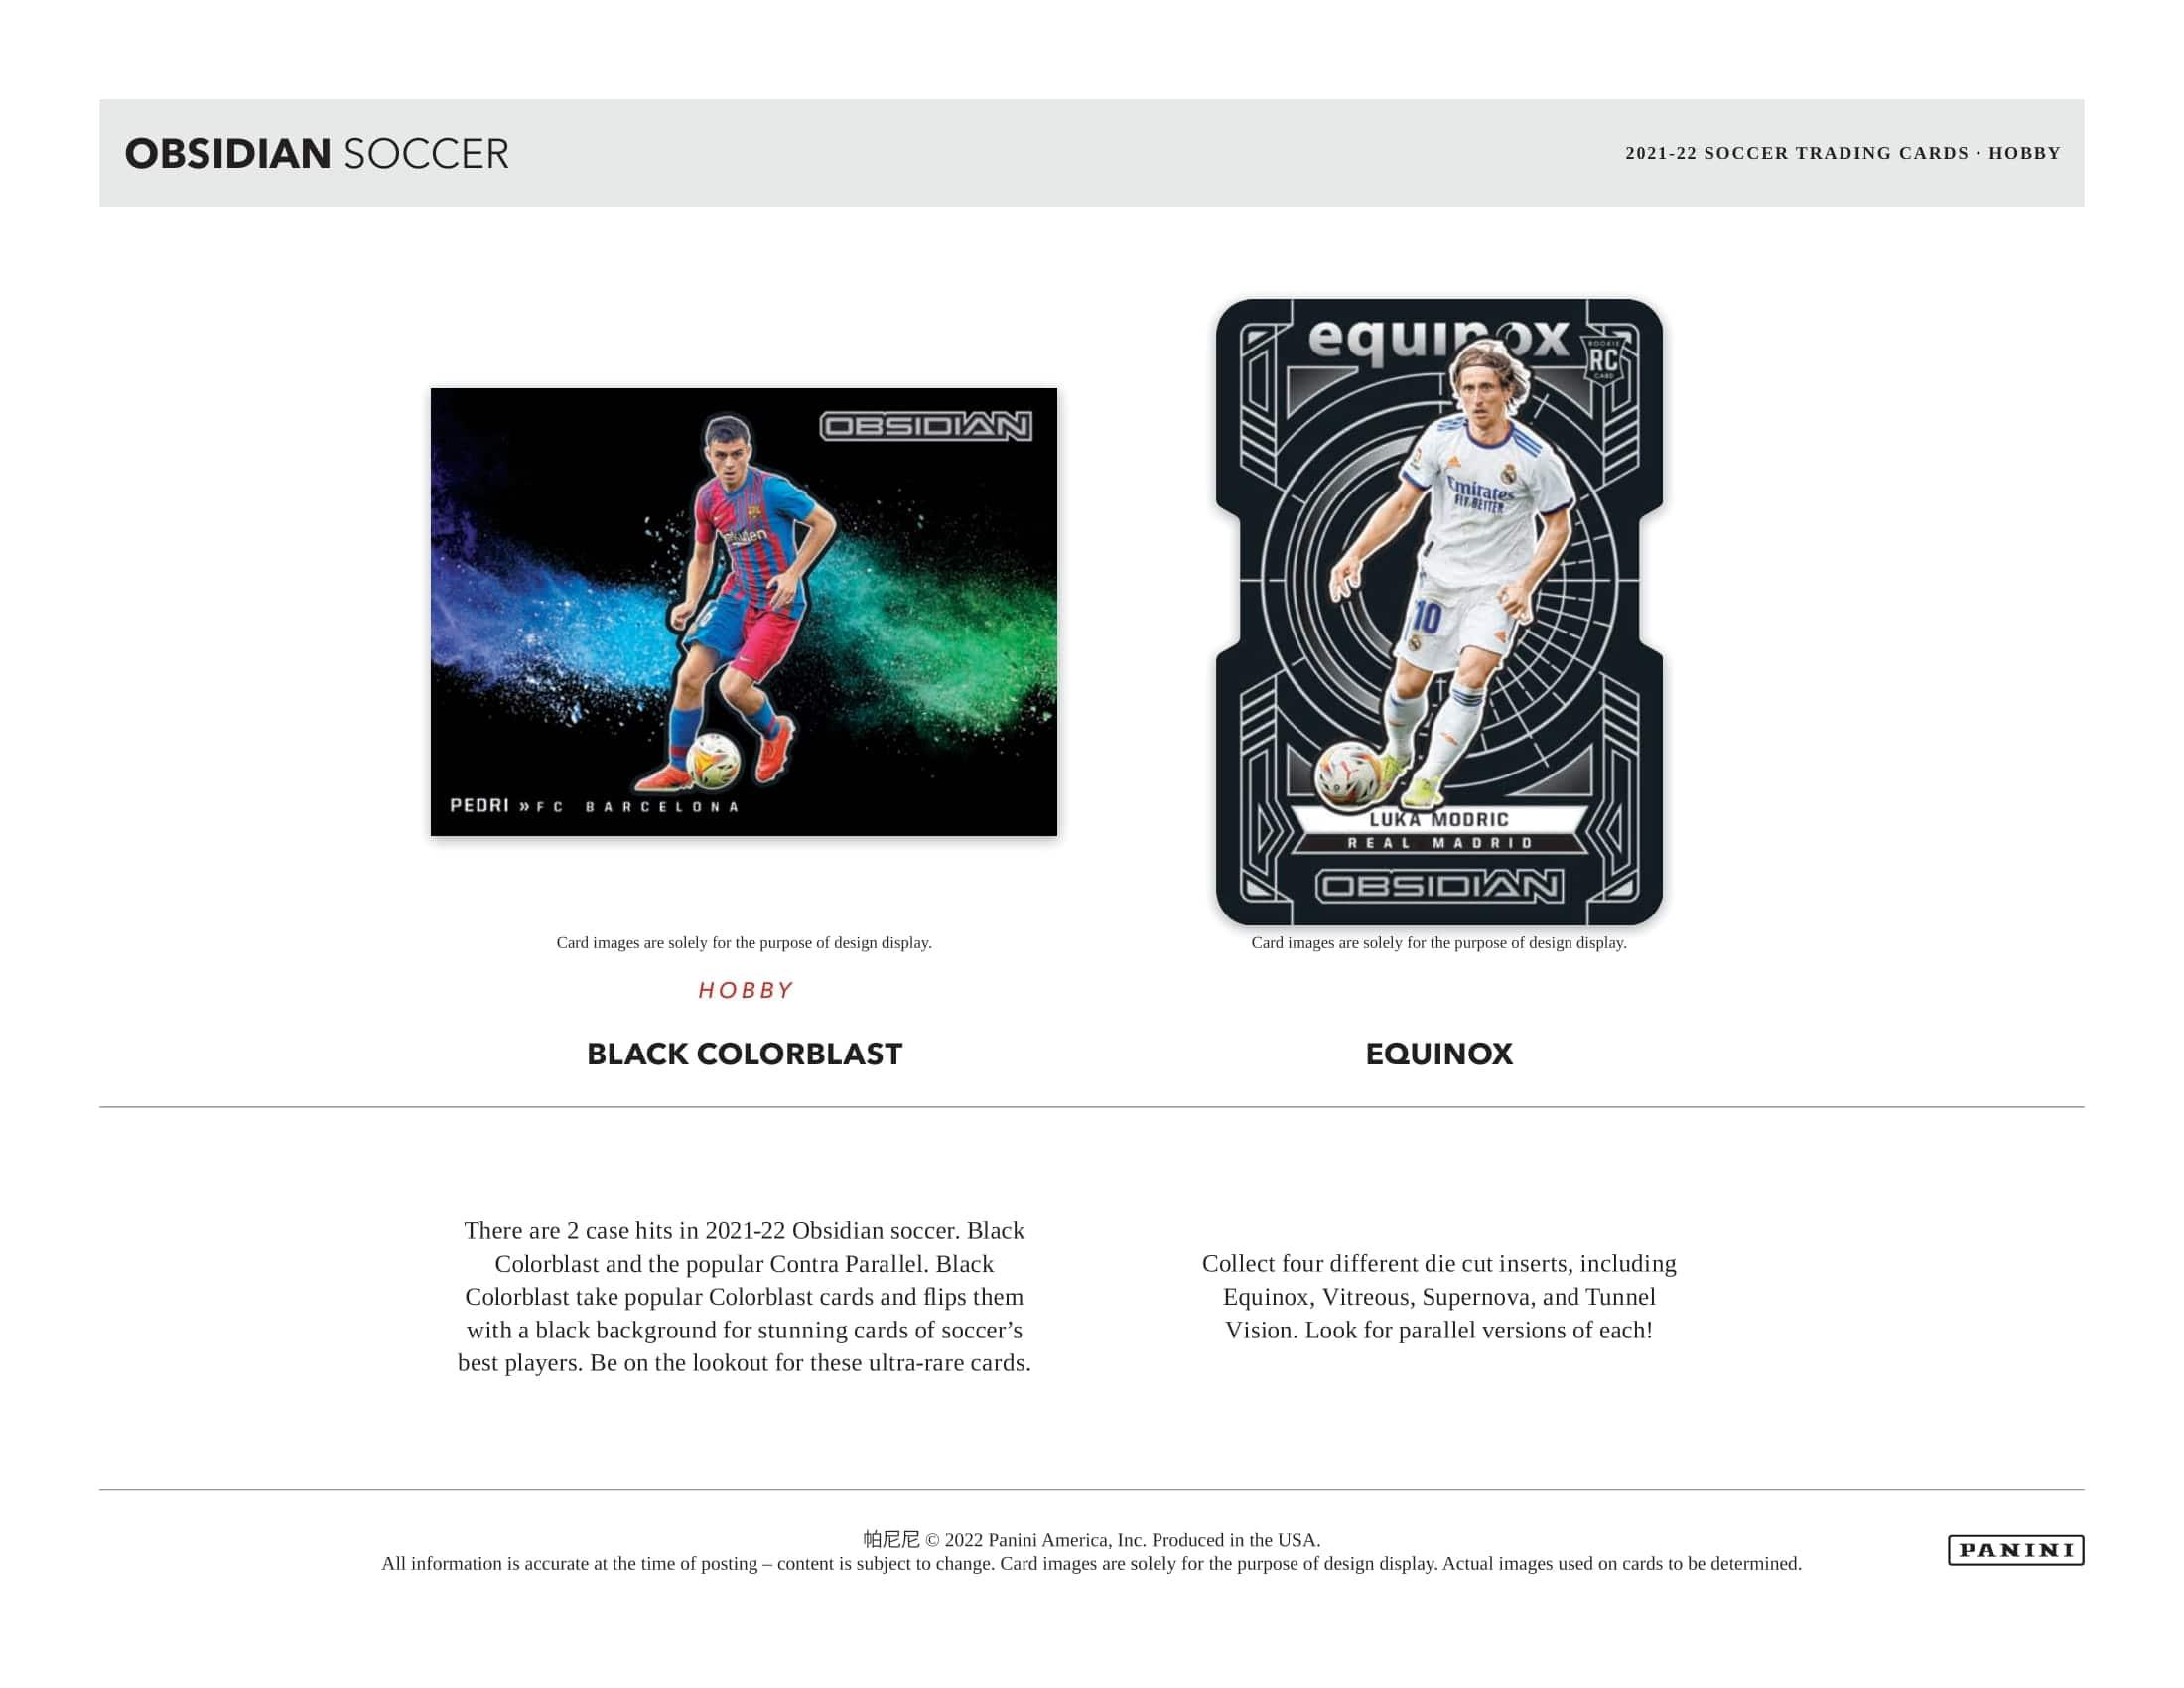 Panini - 2021/22 Obsidian Football (Soccer) - Hobby Box - The Card Vault